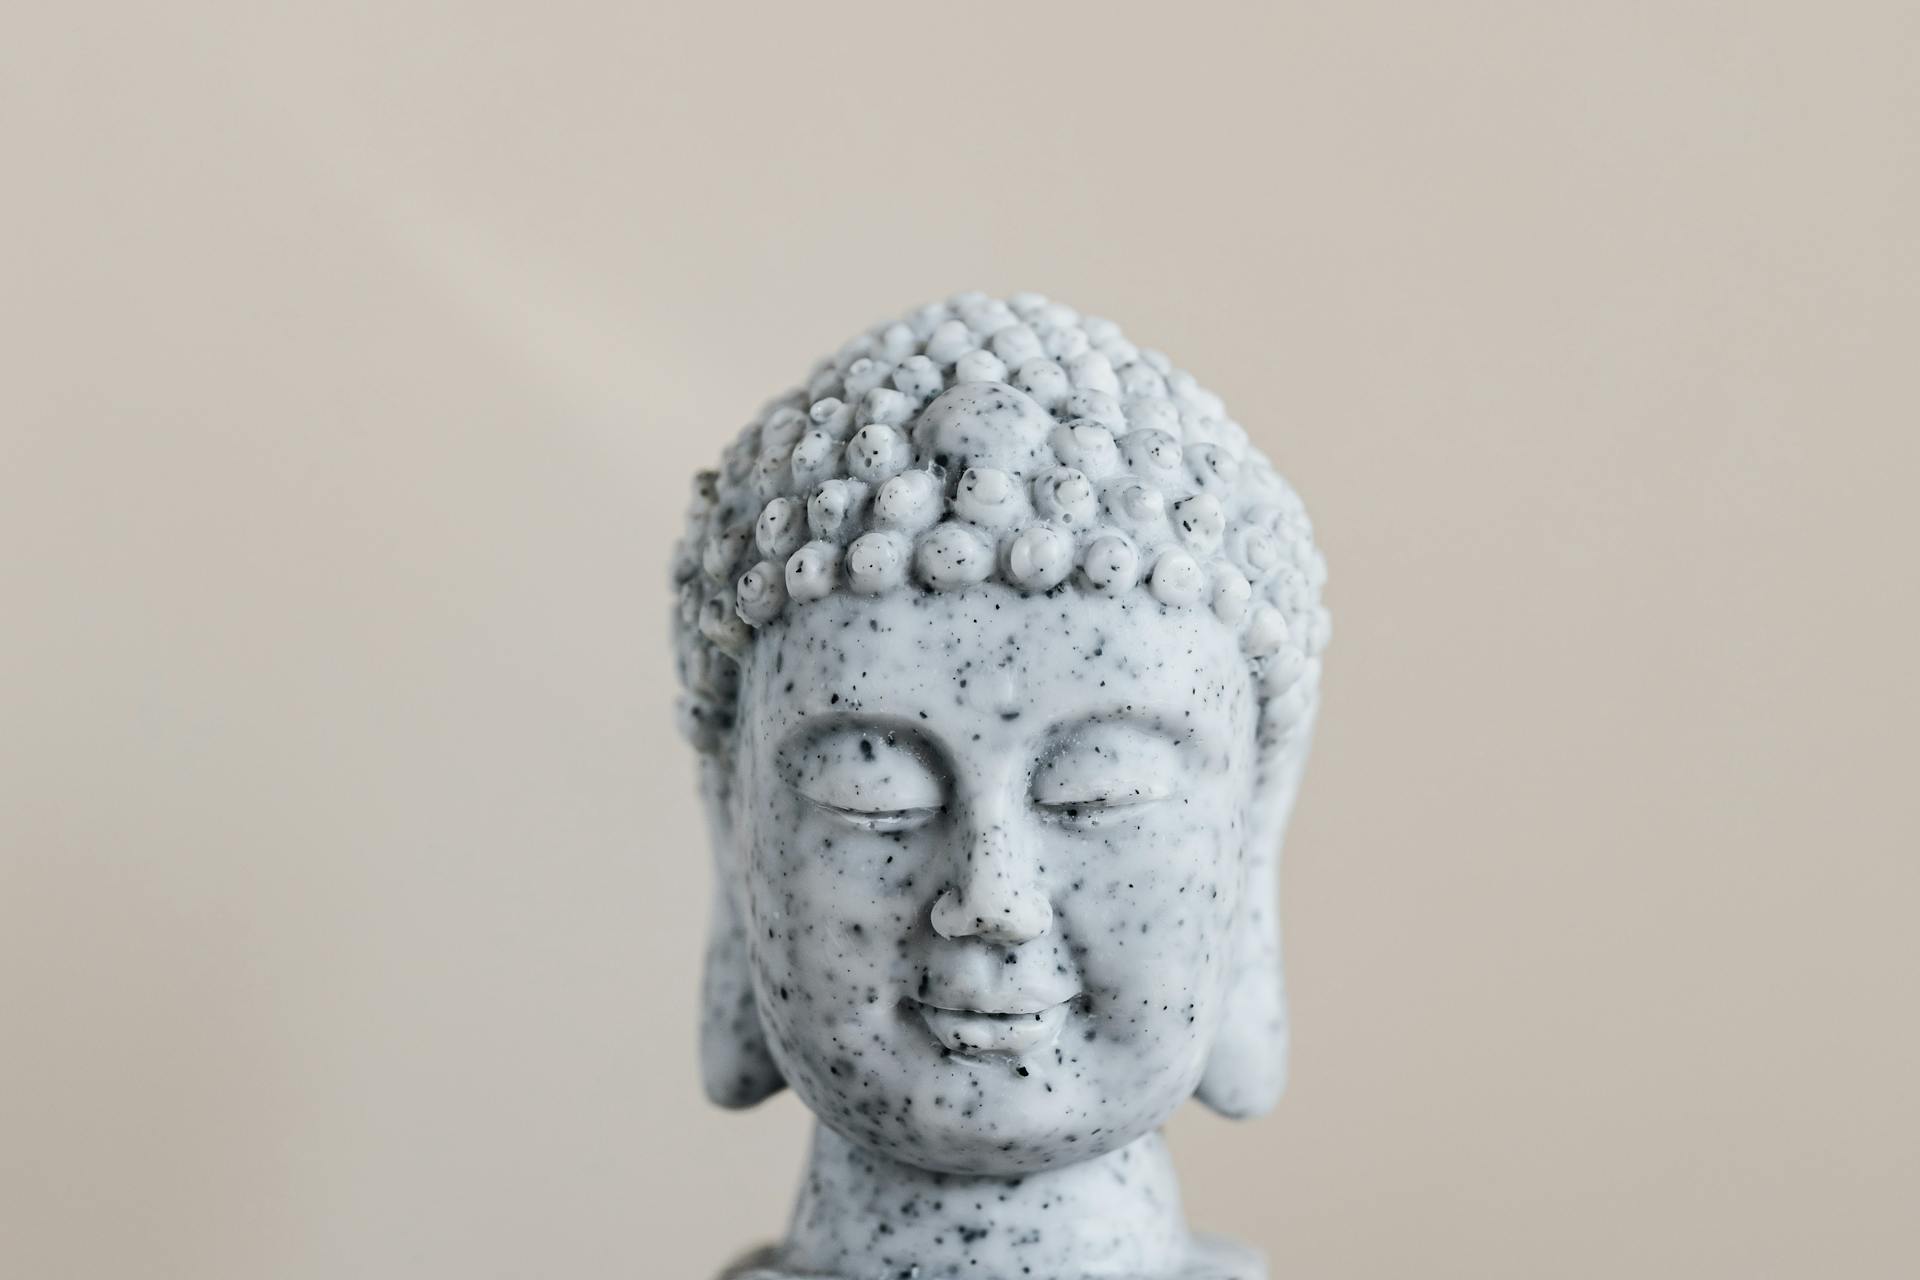 Deze afbeelding laat een Buddha hoofd zien. Aangezien Buddha als authentiek wordt gezien is dit een goede motivatie voor bedrijven om hem te volgen.